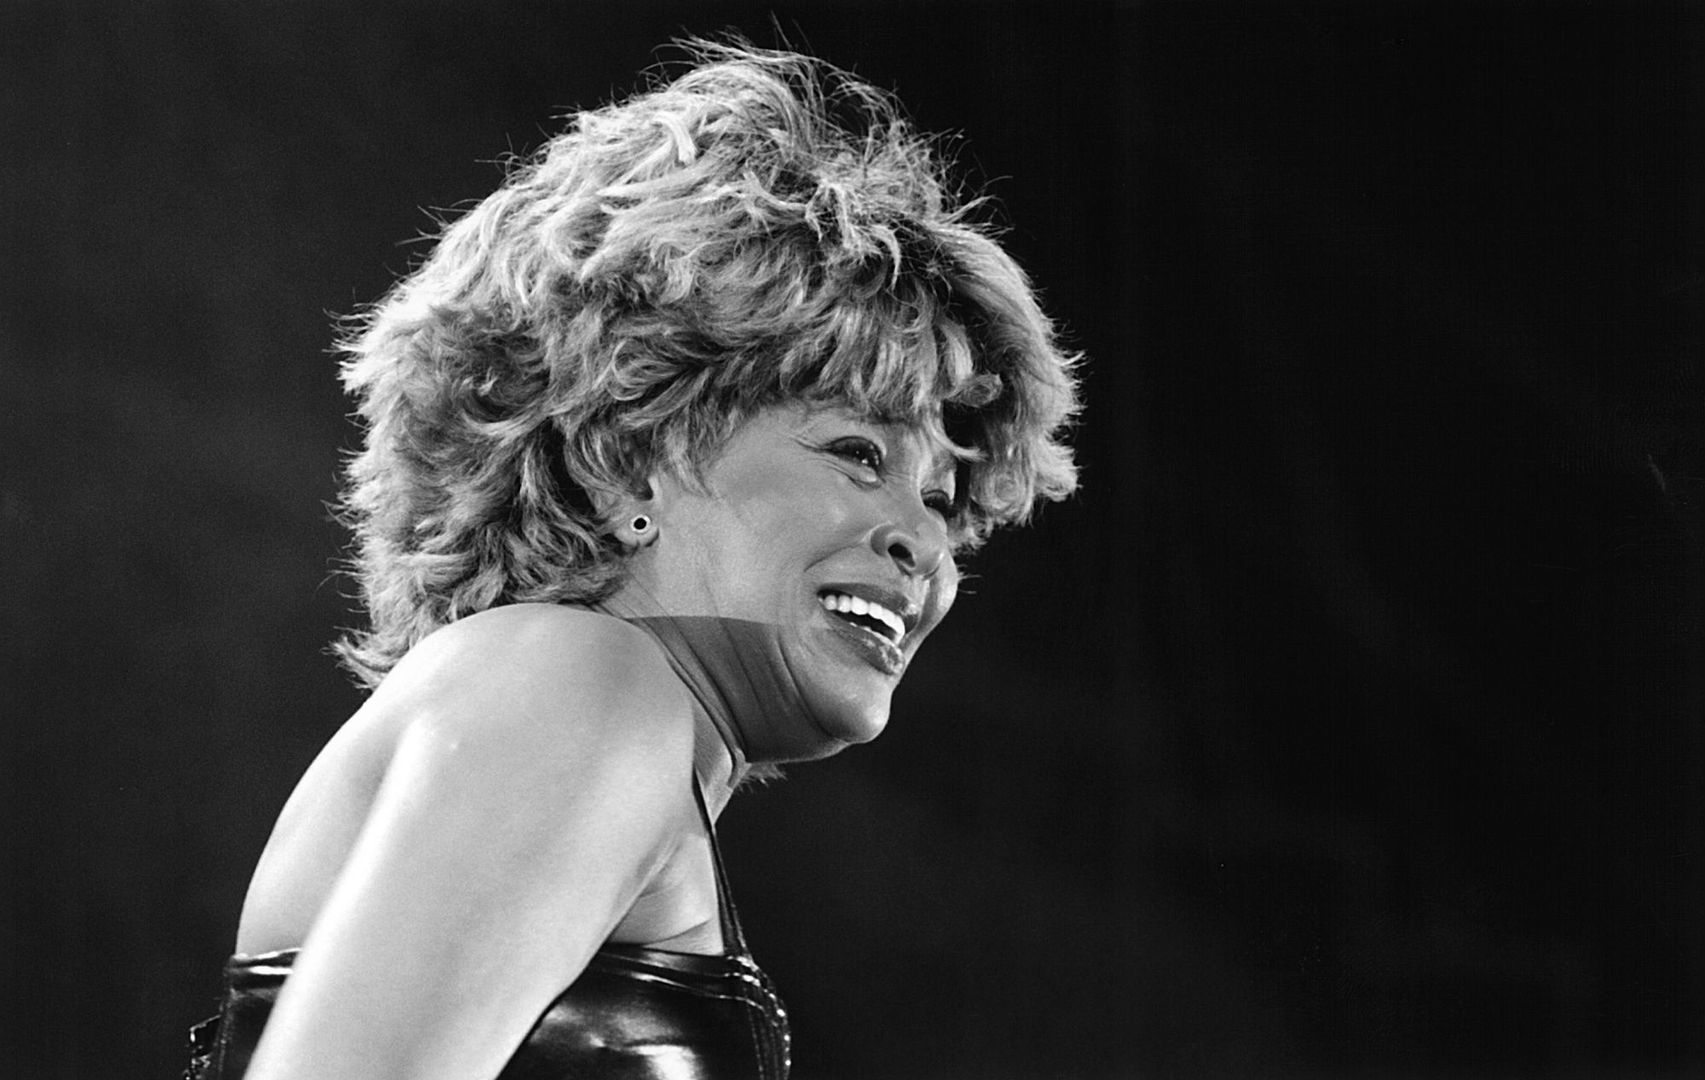 "Gdybym wiedziała". Niedługo przed śmiercią Tina Turner ostrzegała ludzi